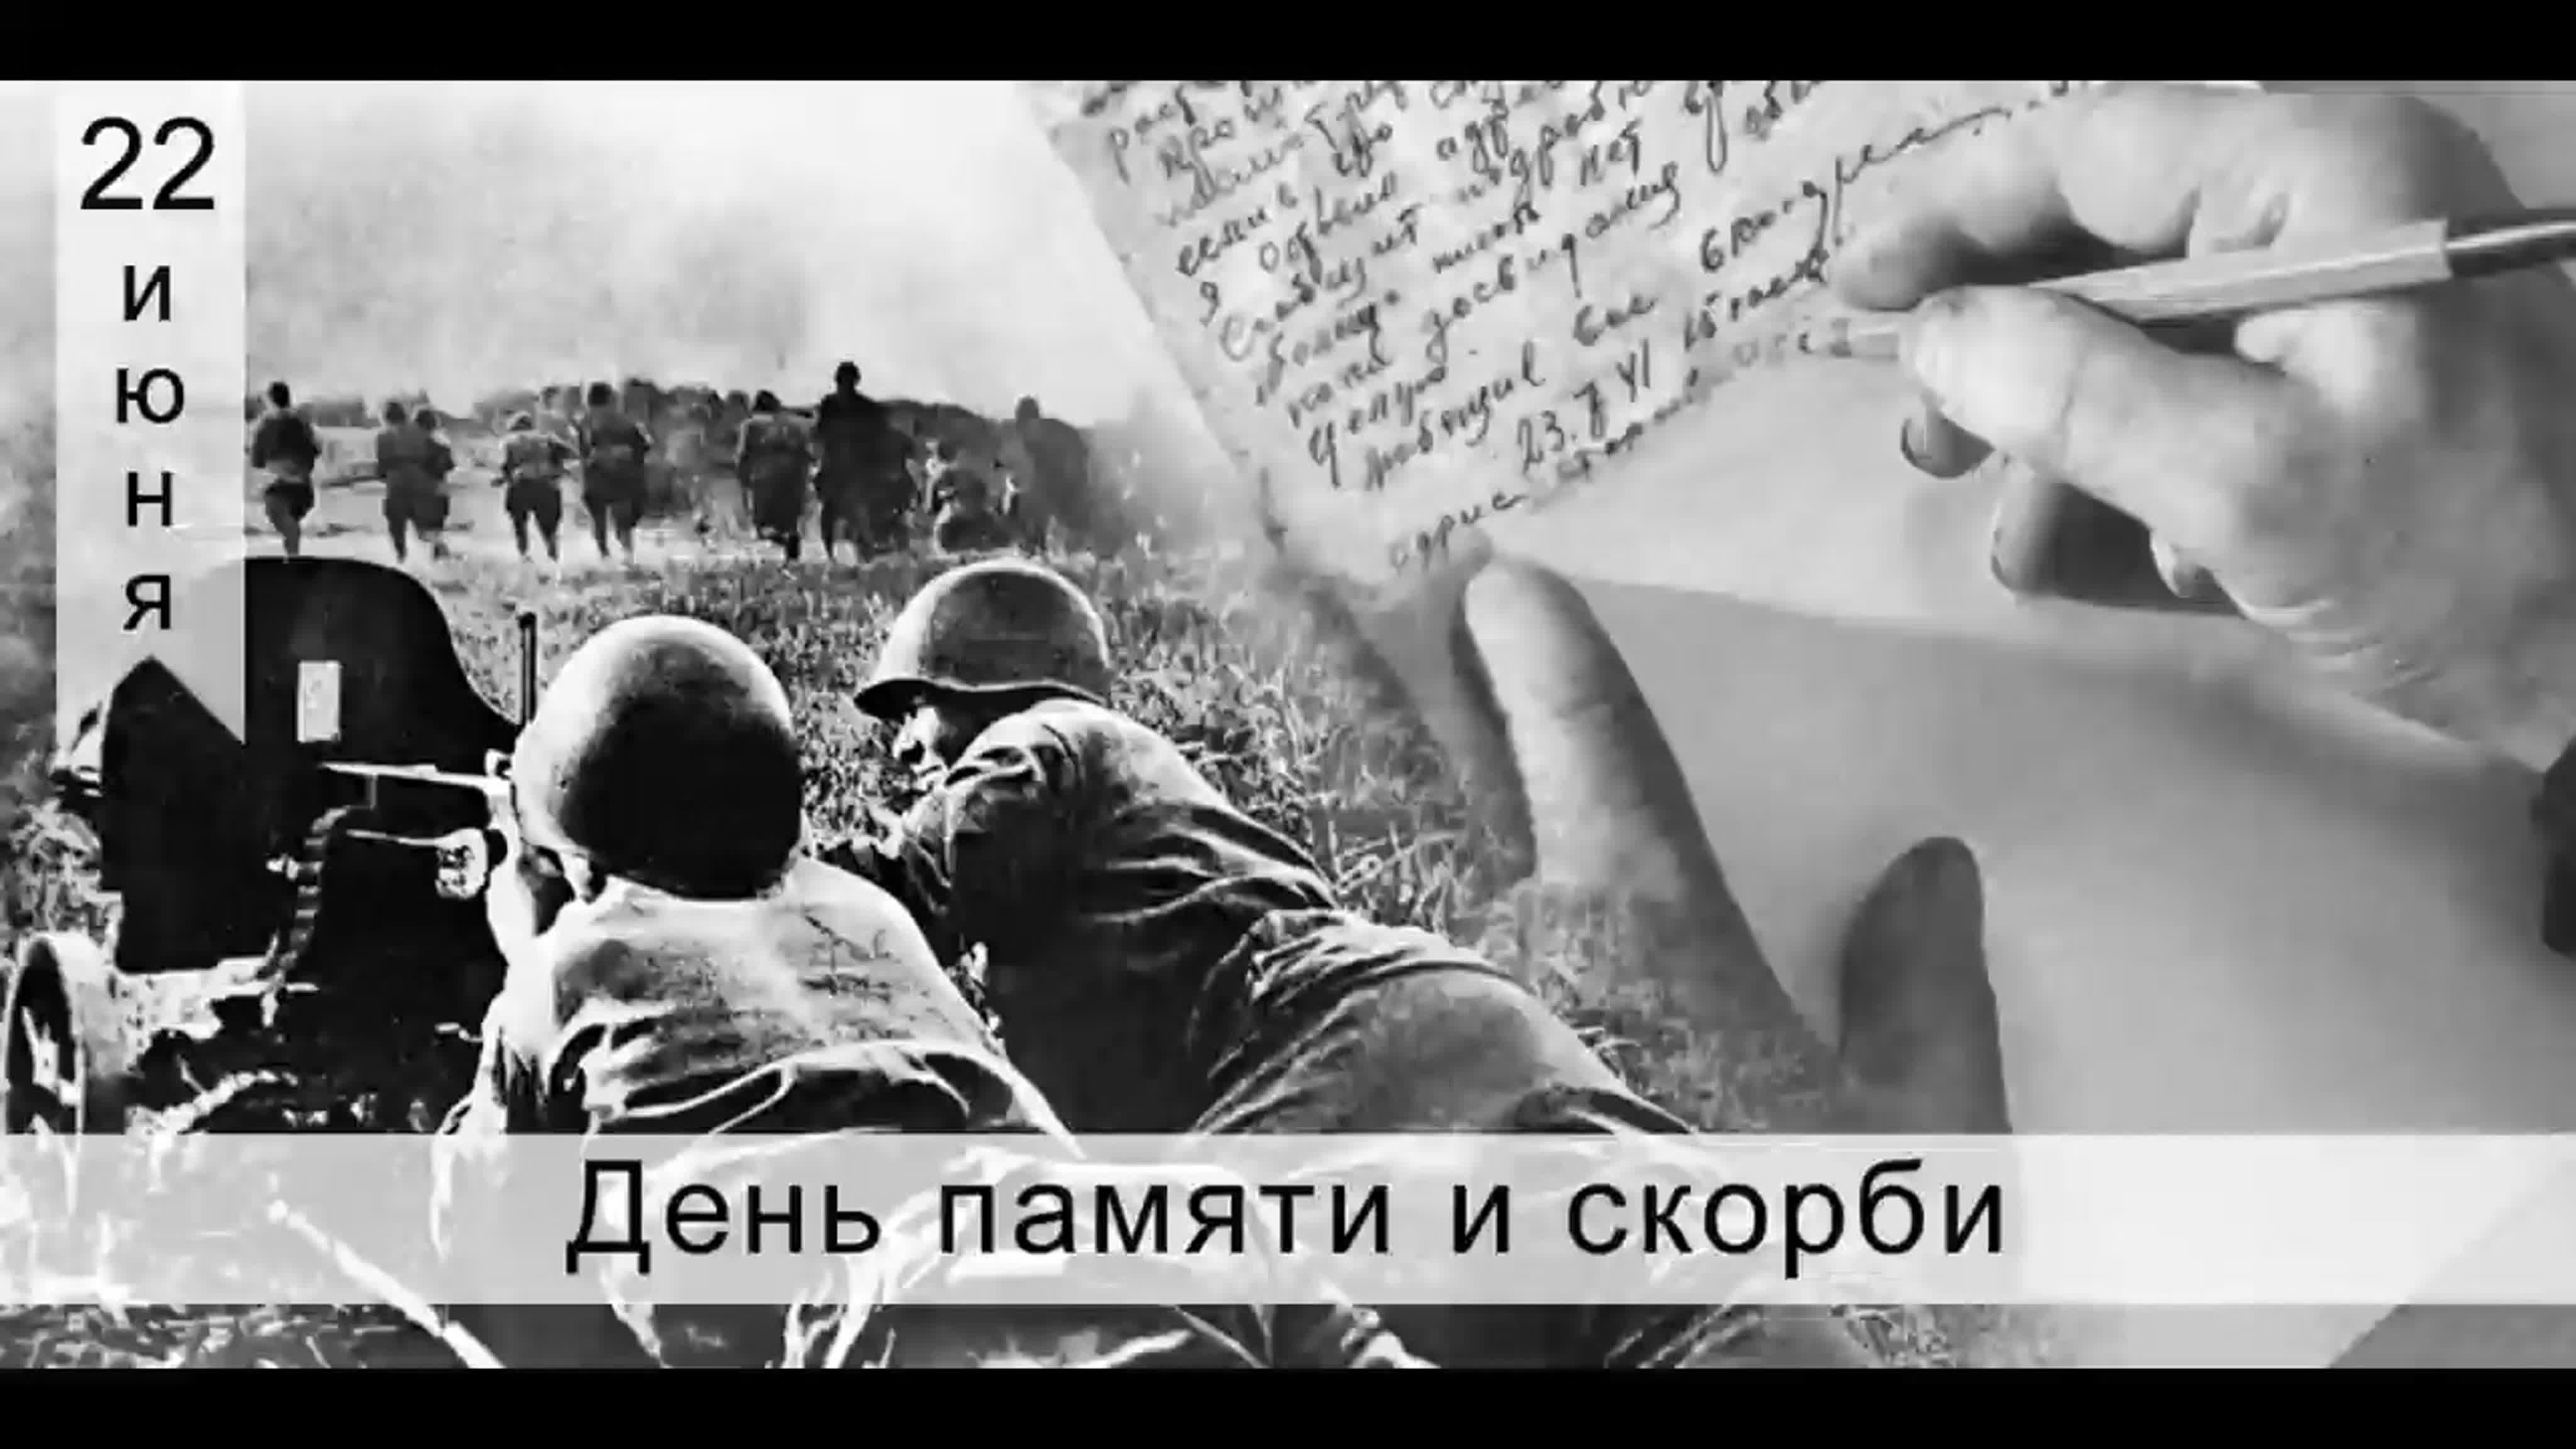 22 июня 1941 словами. 22.06.1941 Начало ВОВ. 22 Июня день памяти и скорби день начала Великой Отечественной войны.